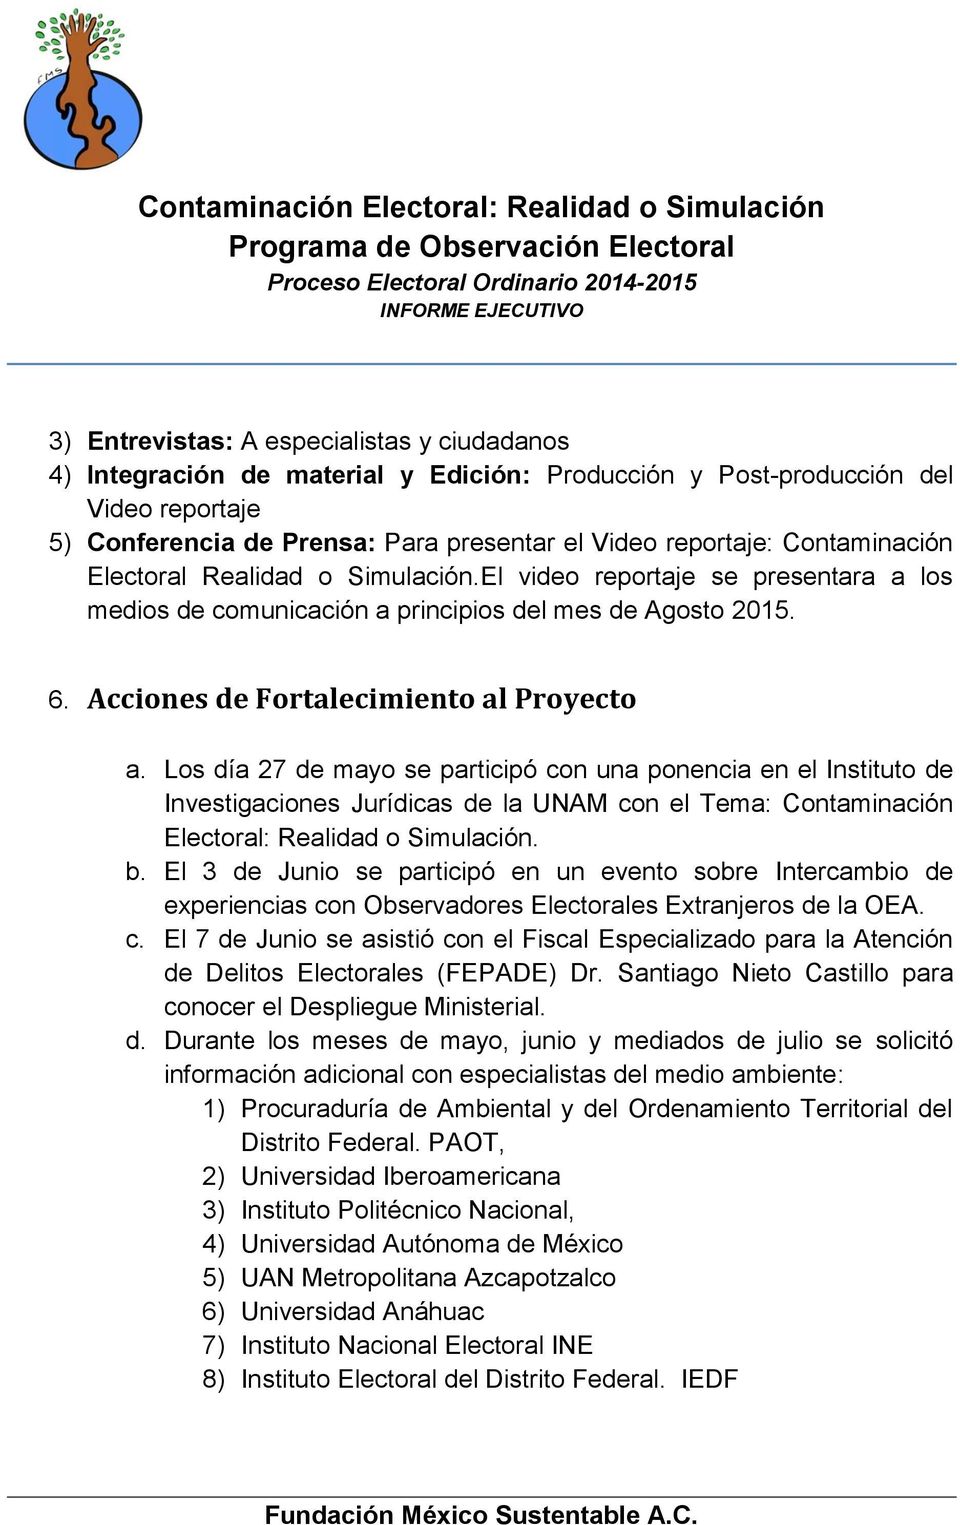 Los día 27 de mayo se participó con una ponencia en el Instituto de Investigaciones Jurídicas de la UNAM con el Tema: Contaminación Electoral: Realidad o Simulación. b.